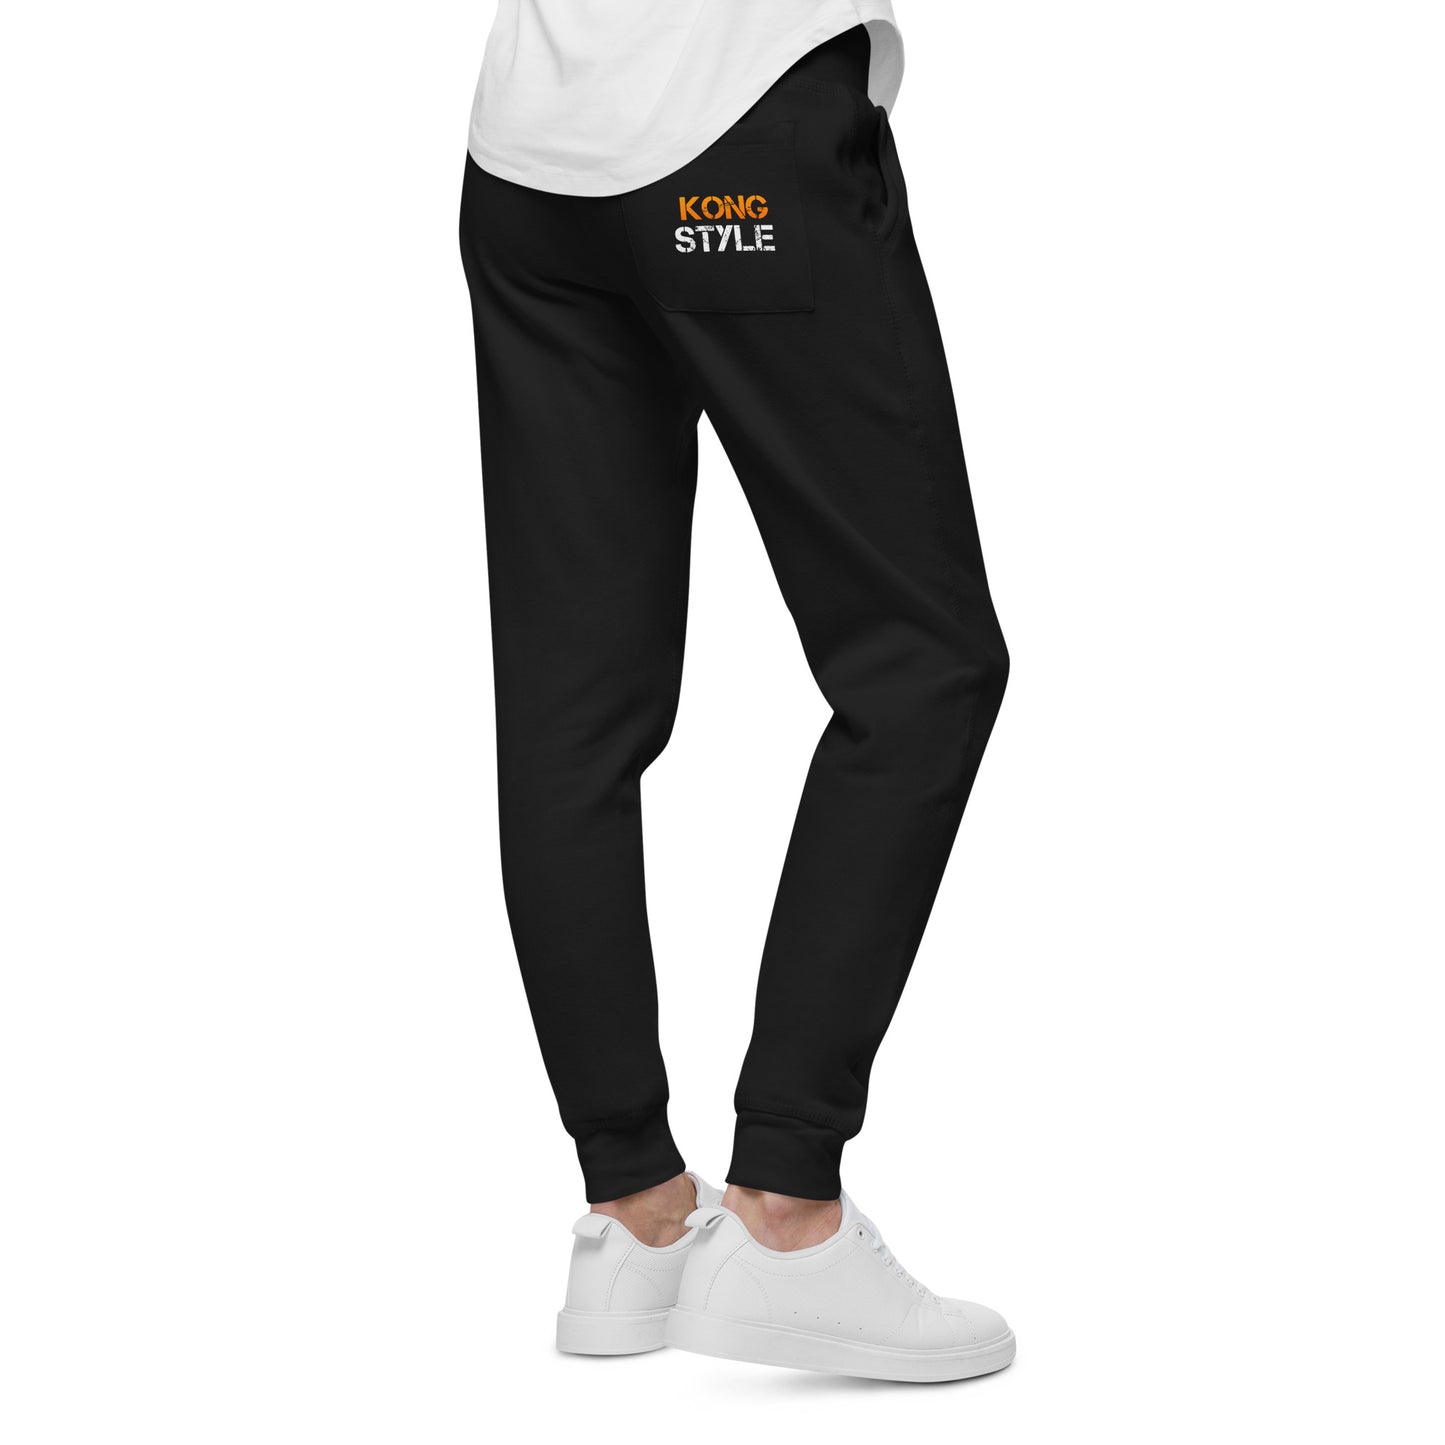 Kong Style Unisex fleece sweatpants